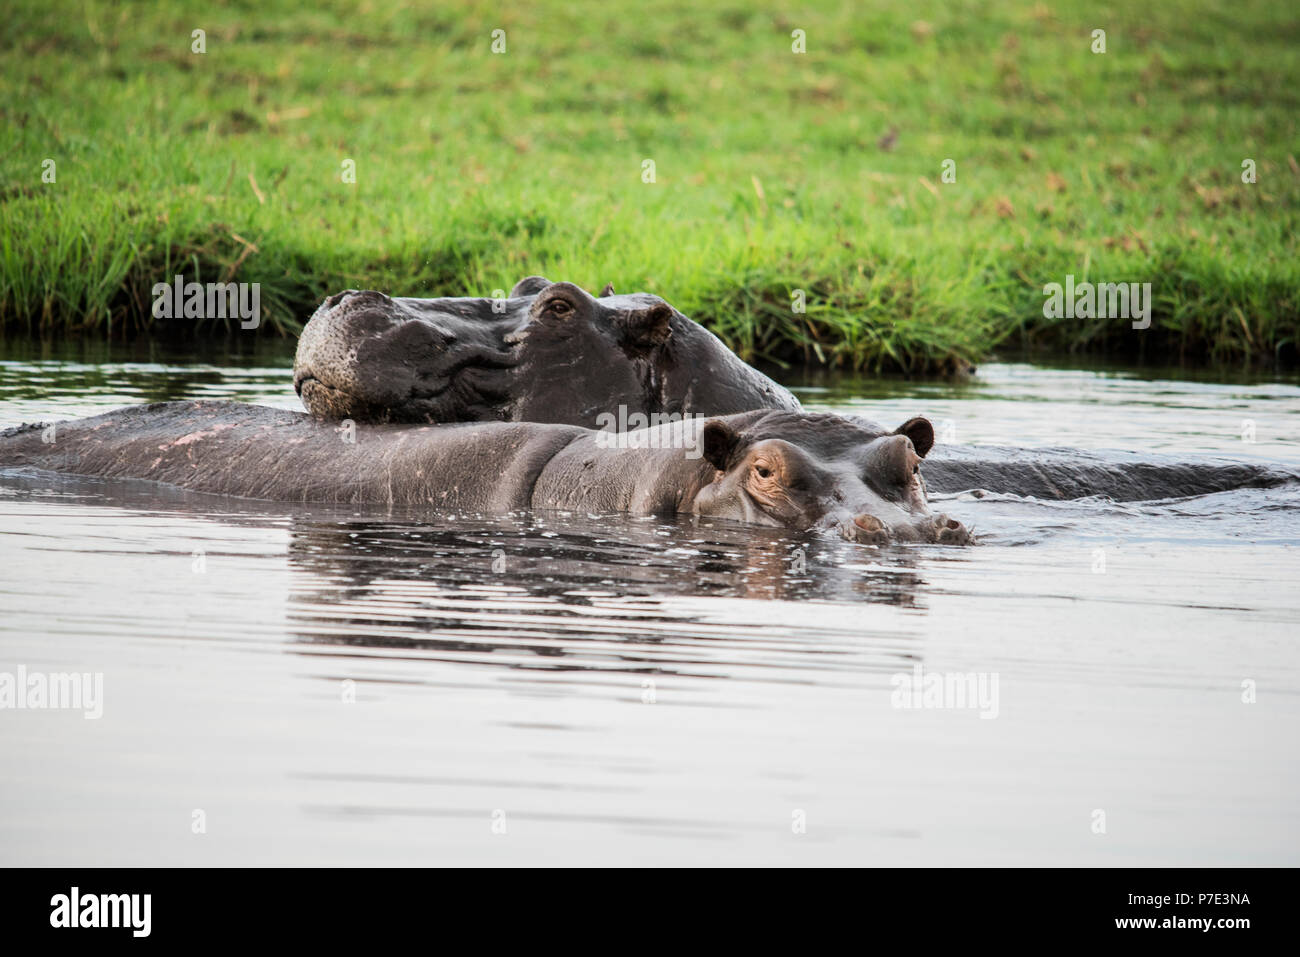 Hippopotamus wallowing in water, Chobe National Park, Botswana Stock Photo